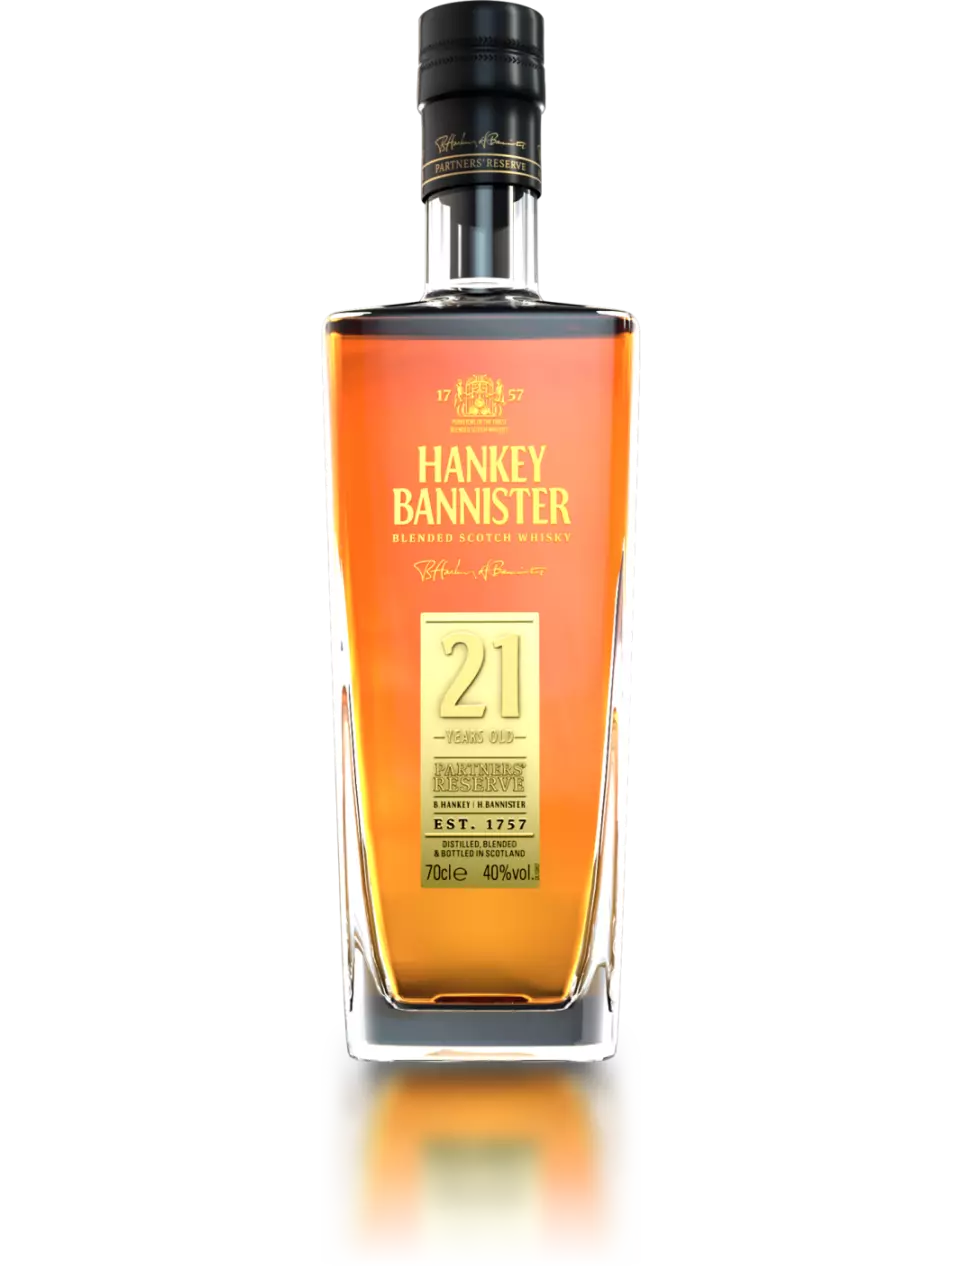 Hankey Bannister 21 Year Old v2 whisky detail